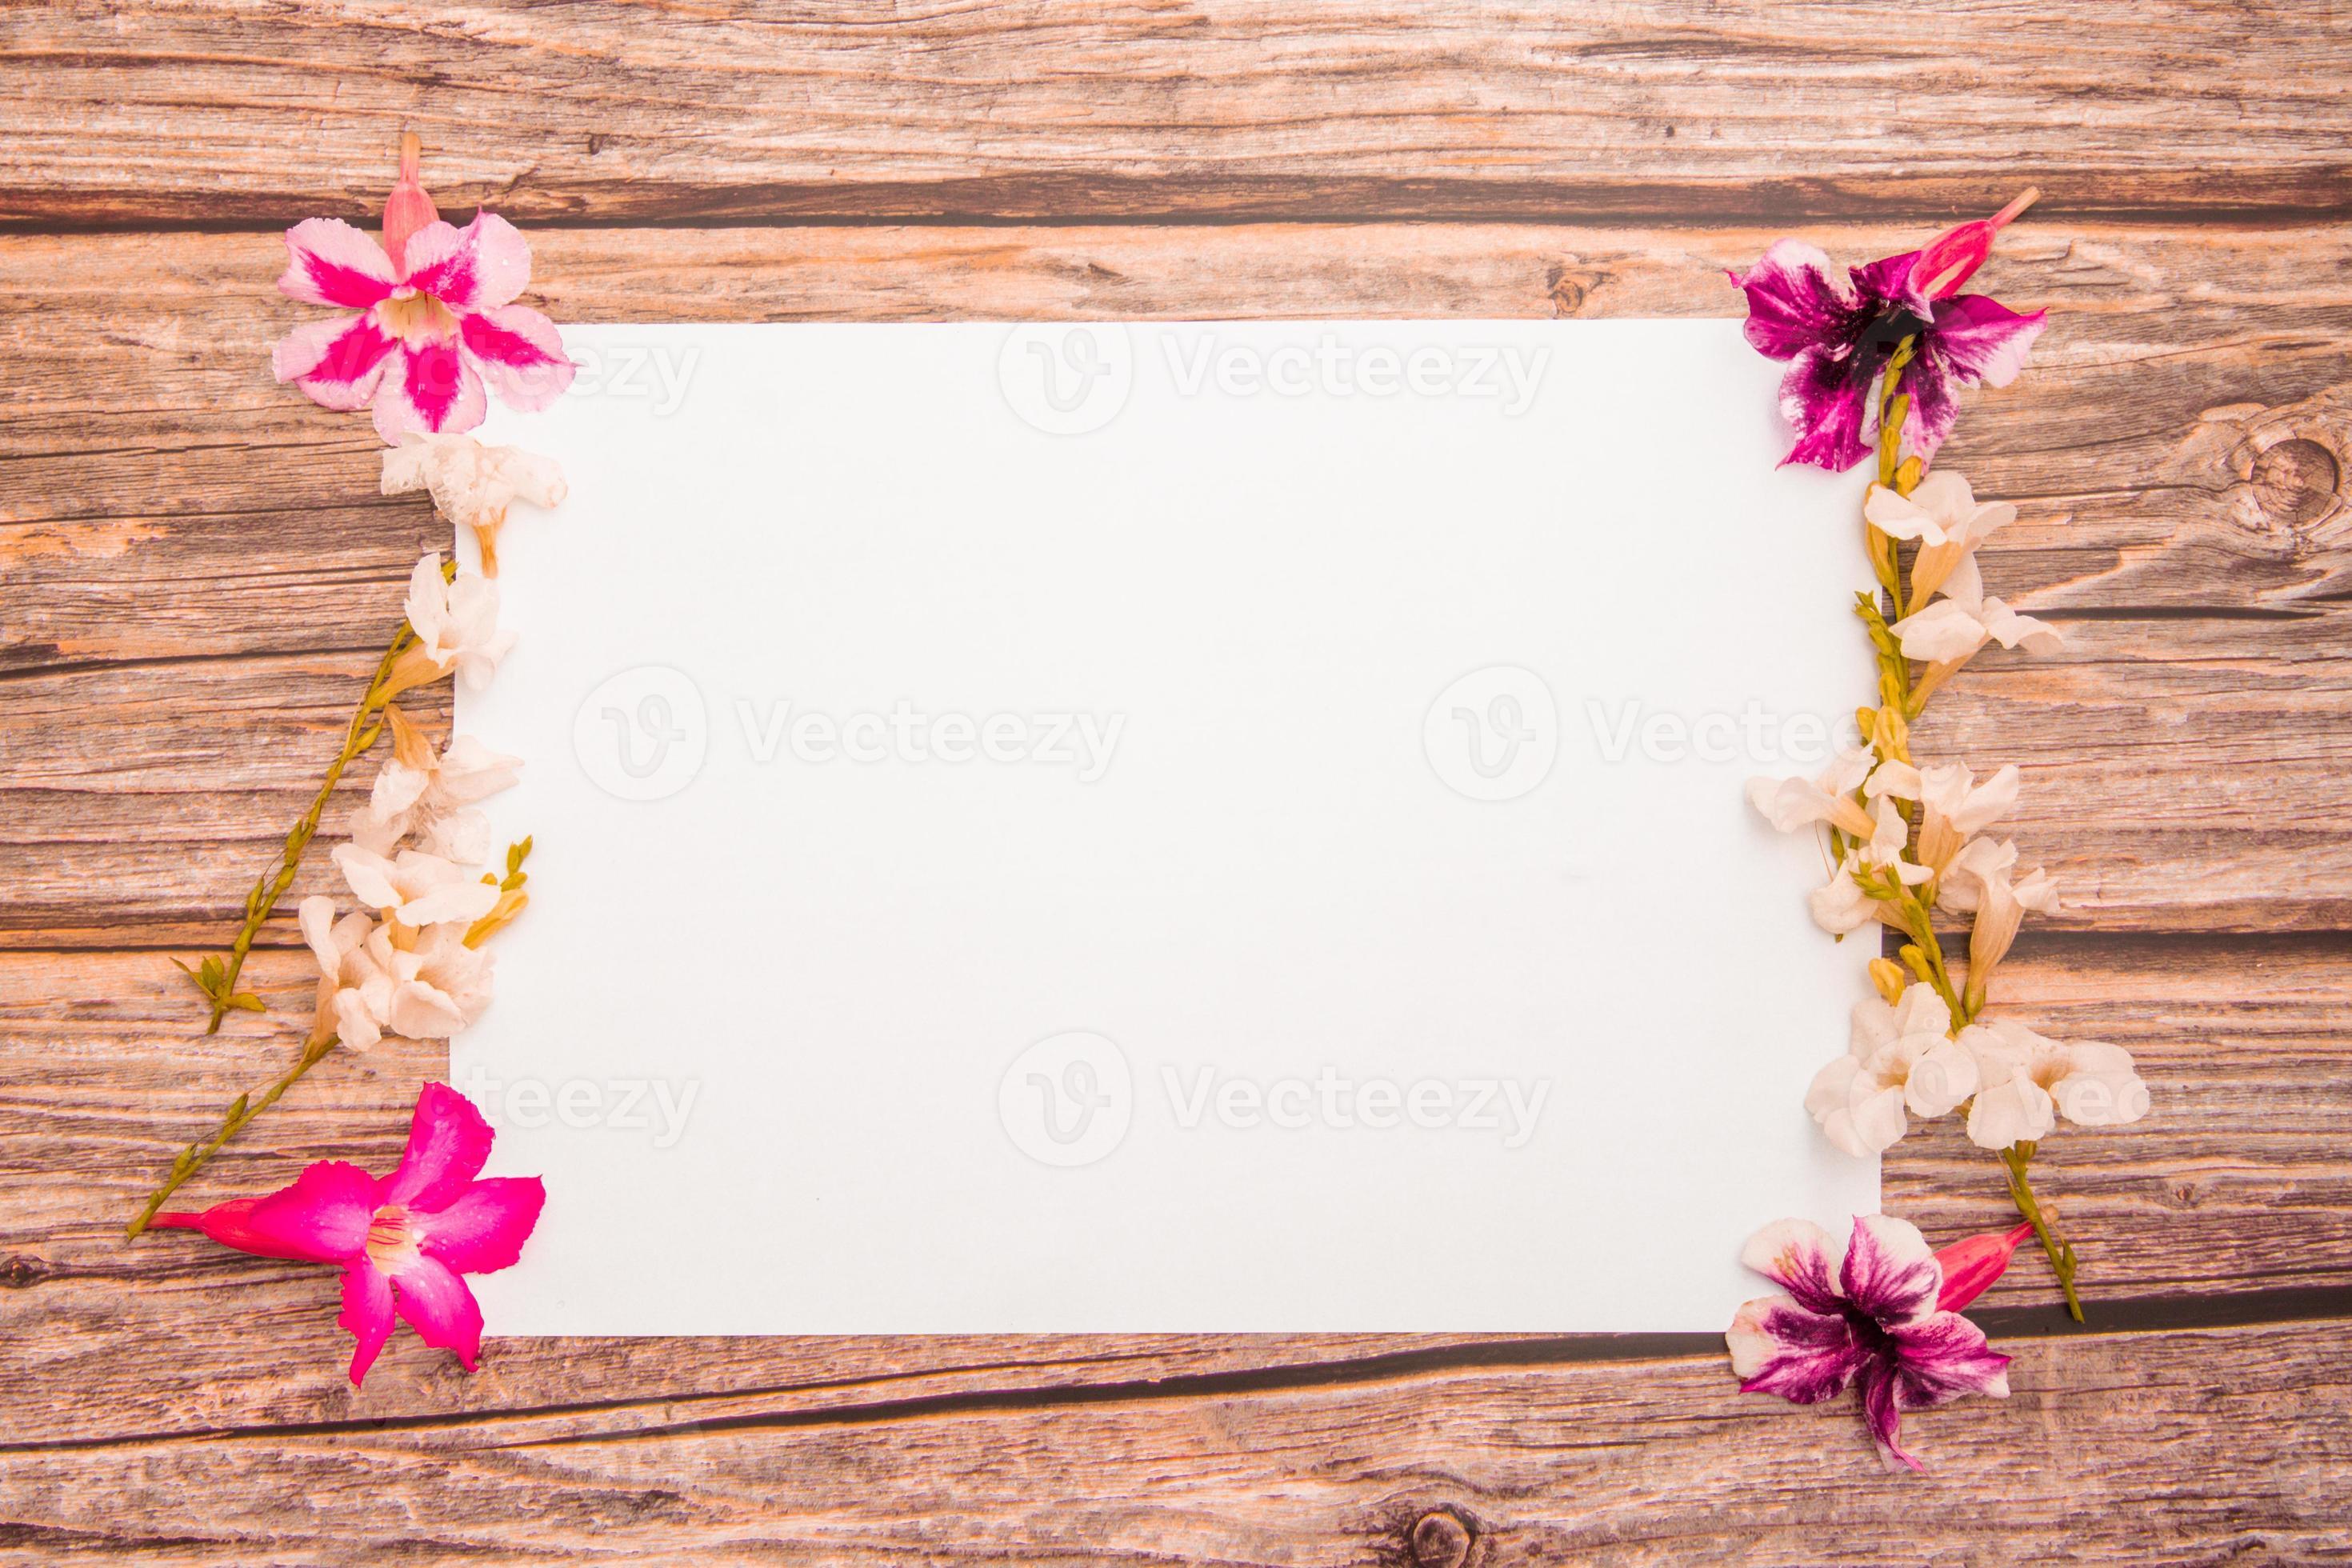 flores de azaleia rosa com flores brancas asystasia gangetica e folha de  papel em branco em uma flor de fronteira background.spring de madeira rosa  e branca, vista superior, modelo em branco para